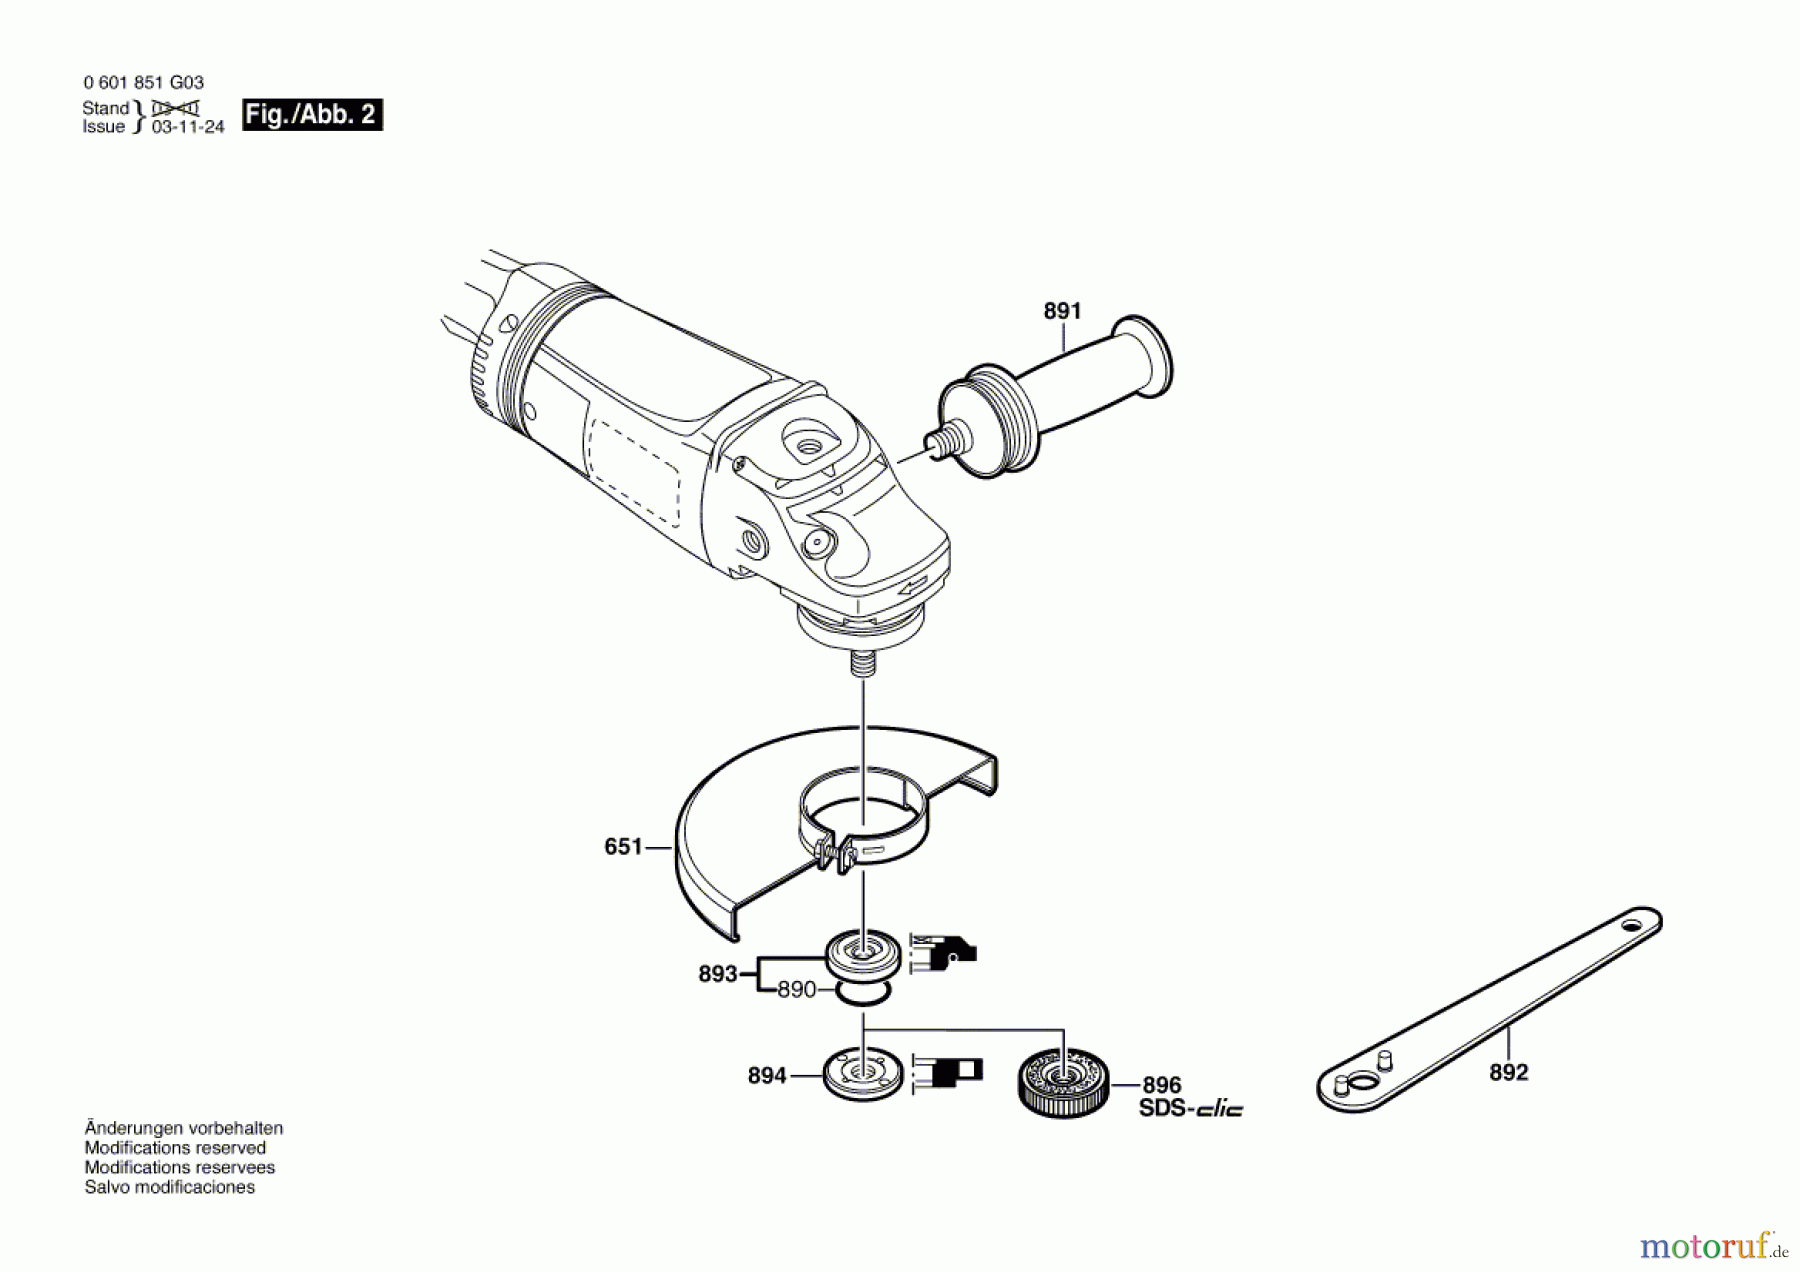  Bosch Werkzeug Winkelschleifer GWS 21-230 JHV Seite 2